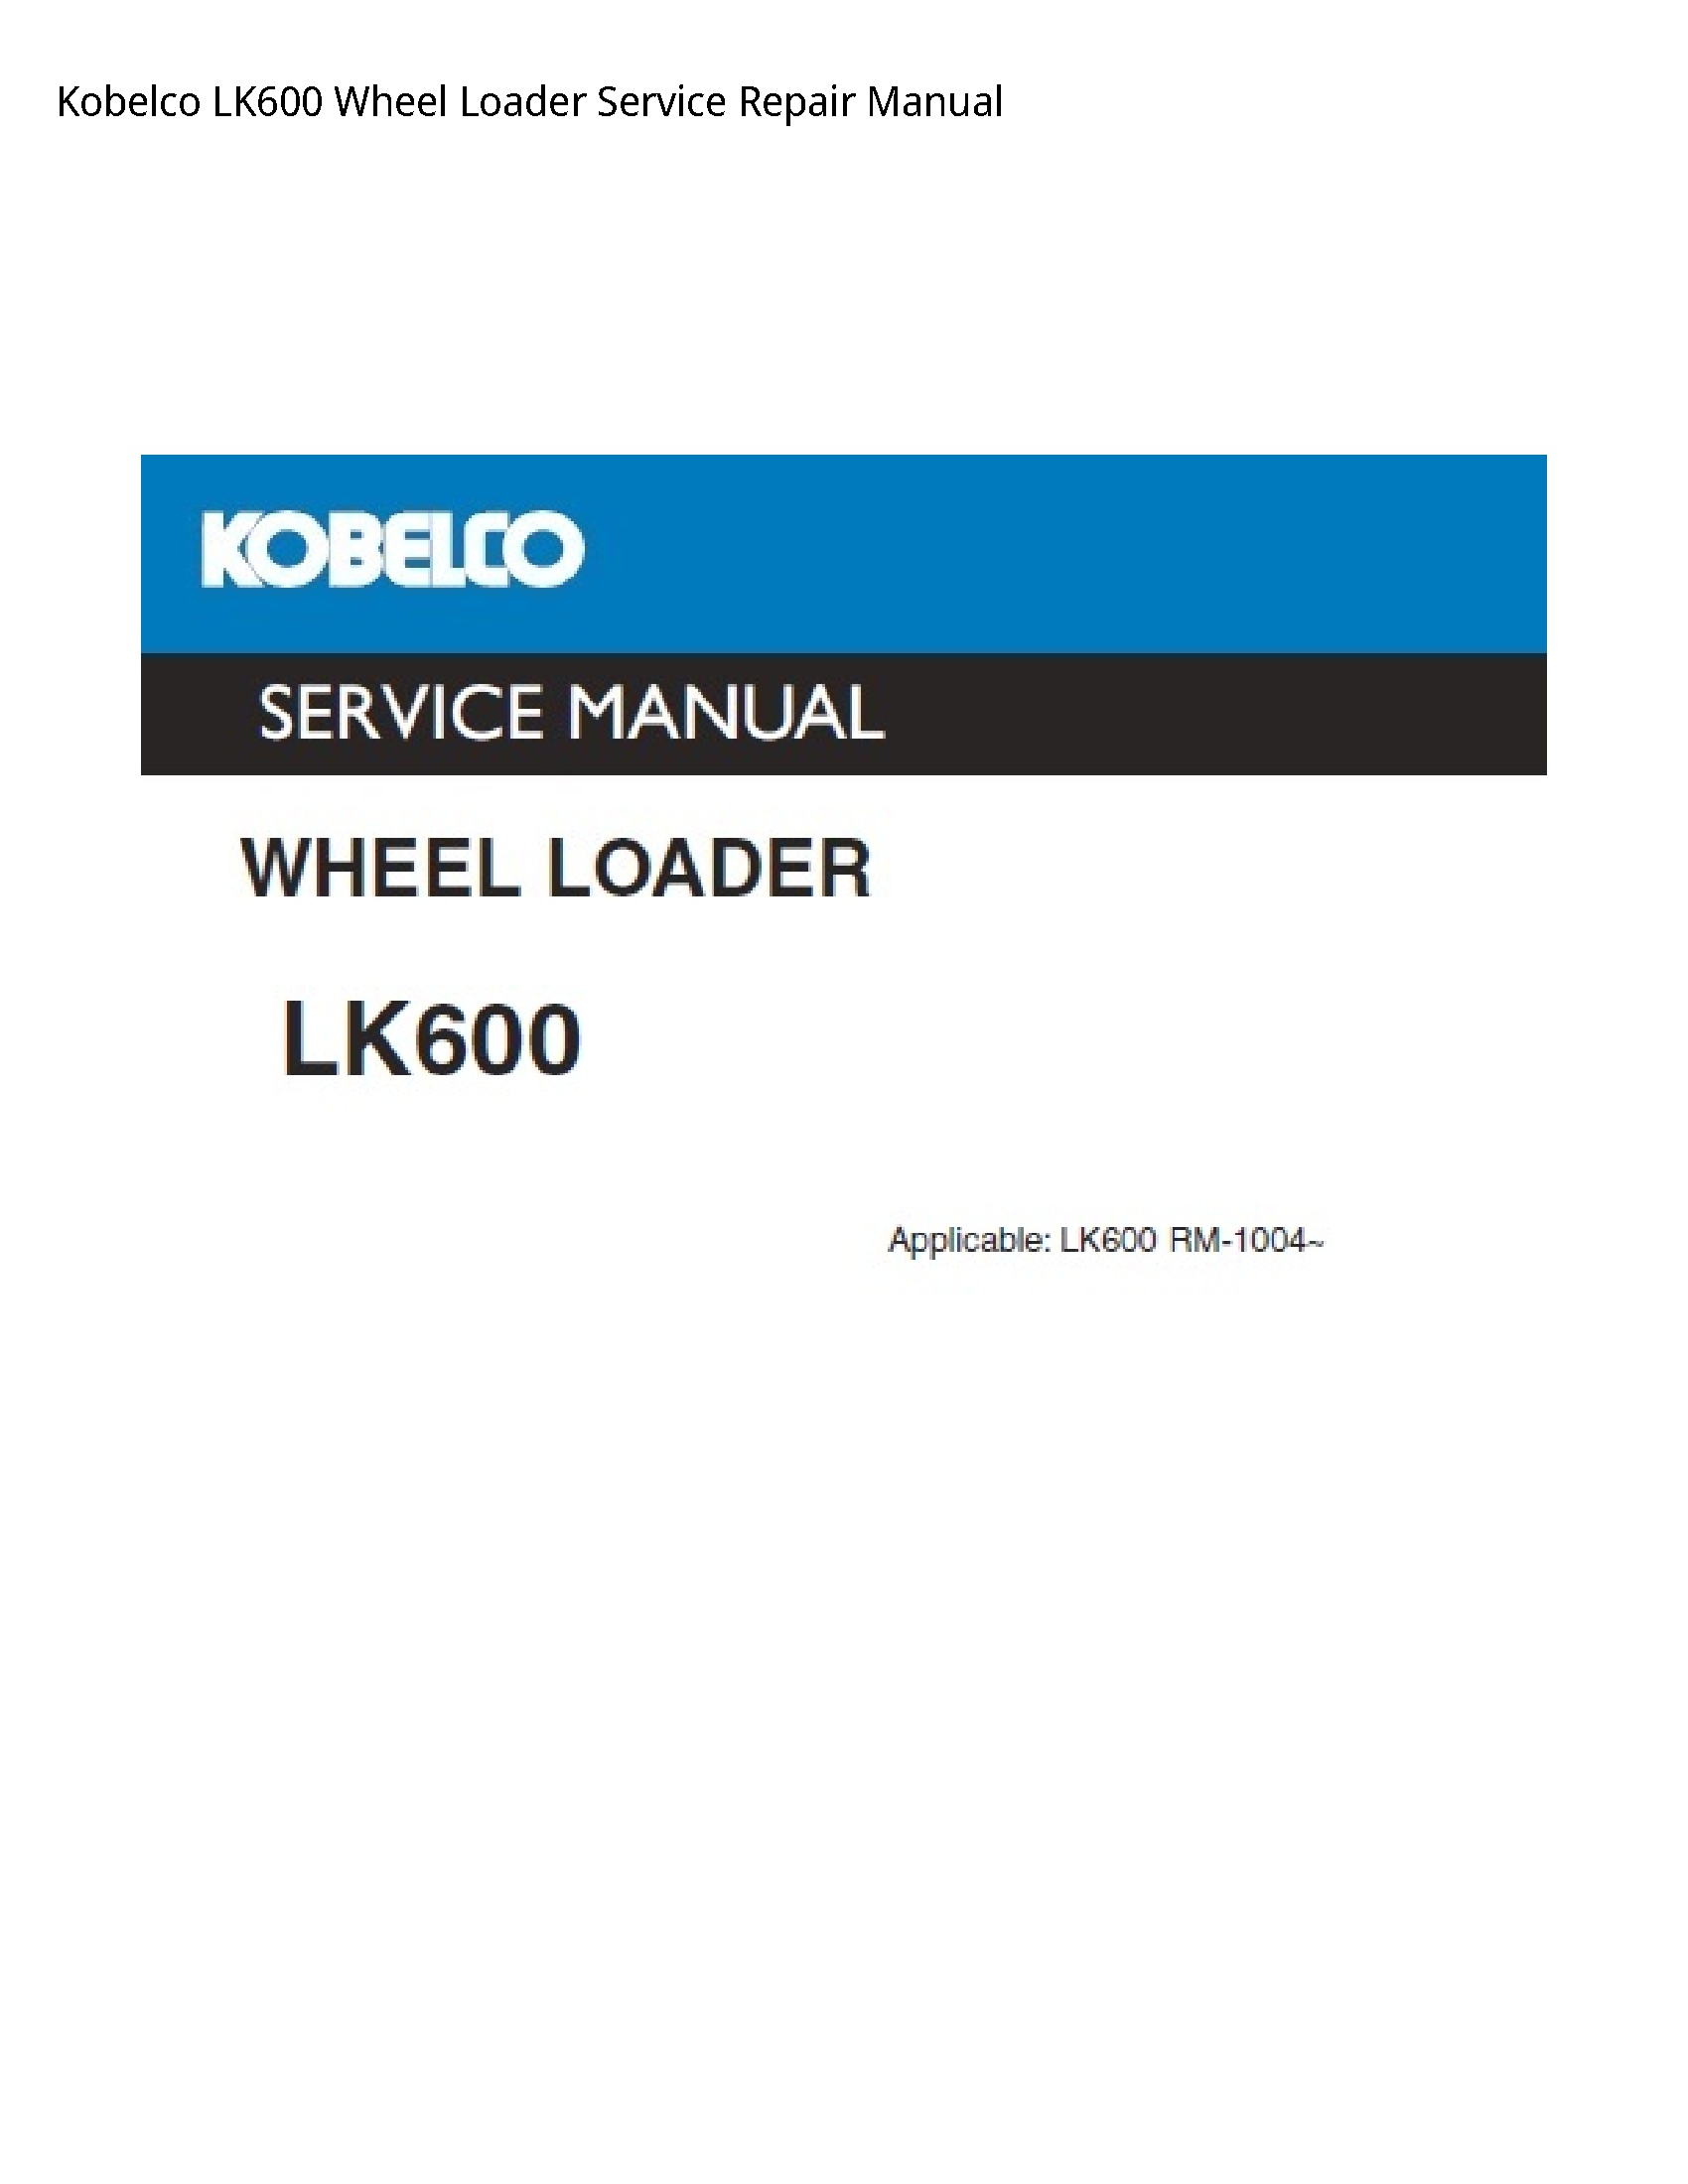 Kobelco LK600 Wheel Loader manual